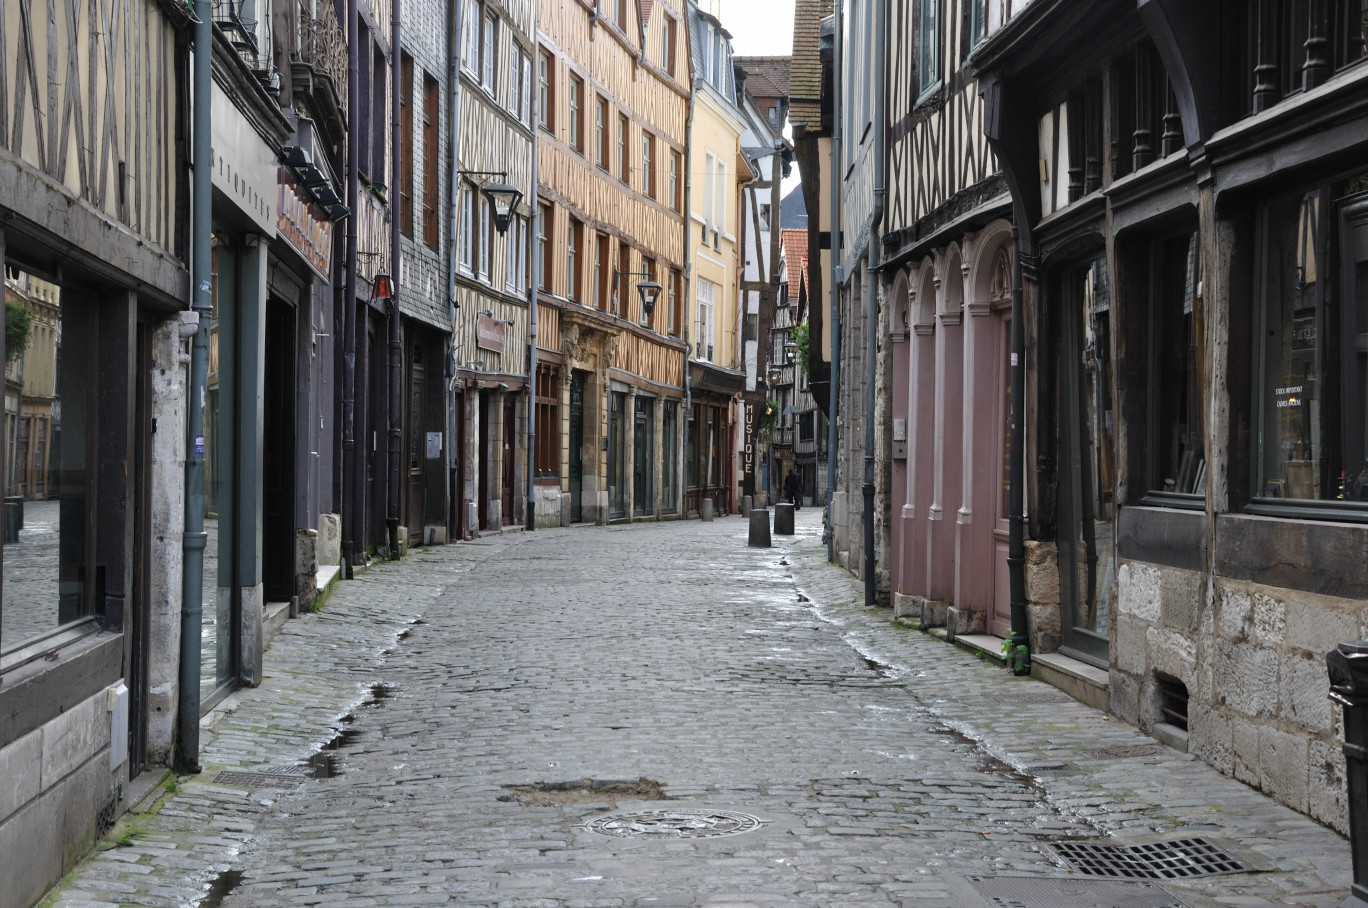 Dans la rue Damiette, ou rue des "antiquaires", est le coeur du quartier des antiquaires qui fait la renommée de la ville de Rouen. (Photo illustration)